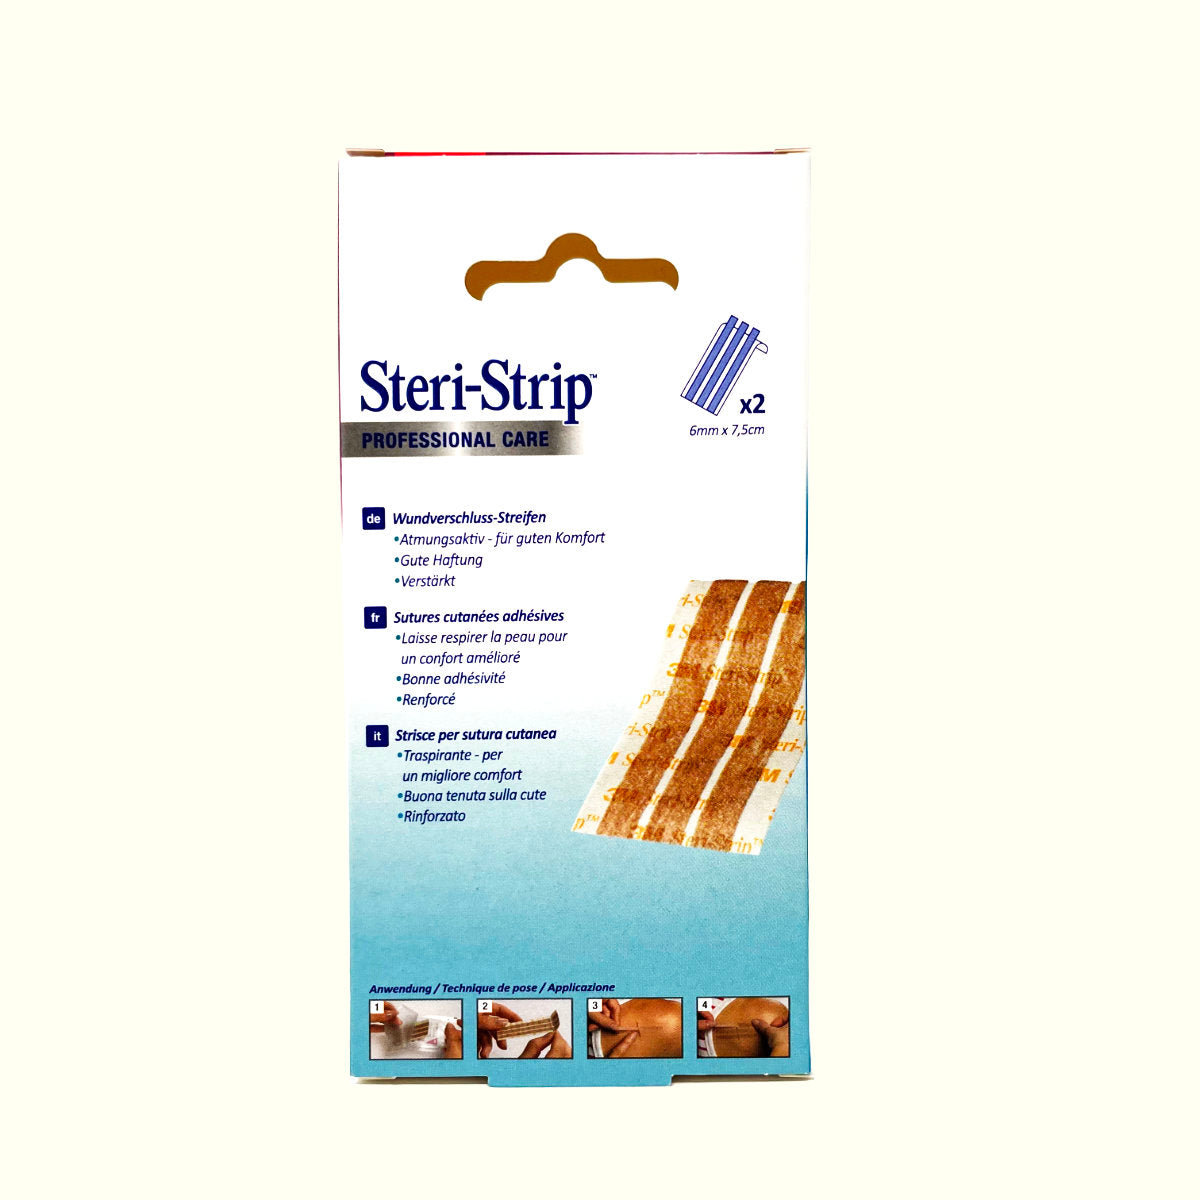 3M Steri-Strip Blendtone, Wundverschlussstreifen, hautfarben, steril, 2 x 3 Streifen 6 mm x 75 mm